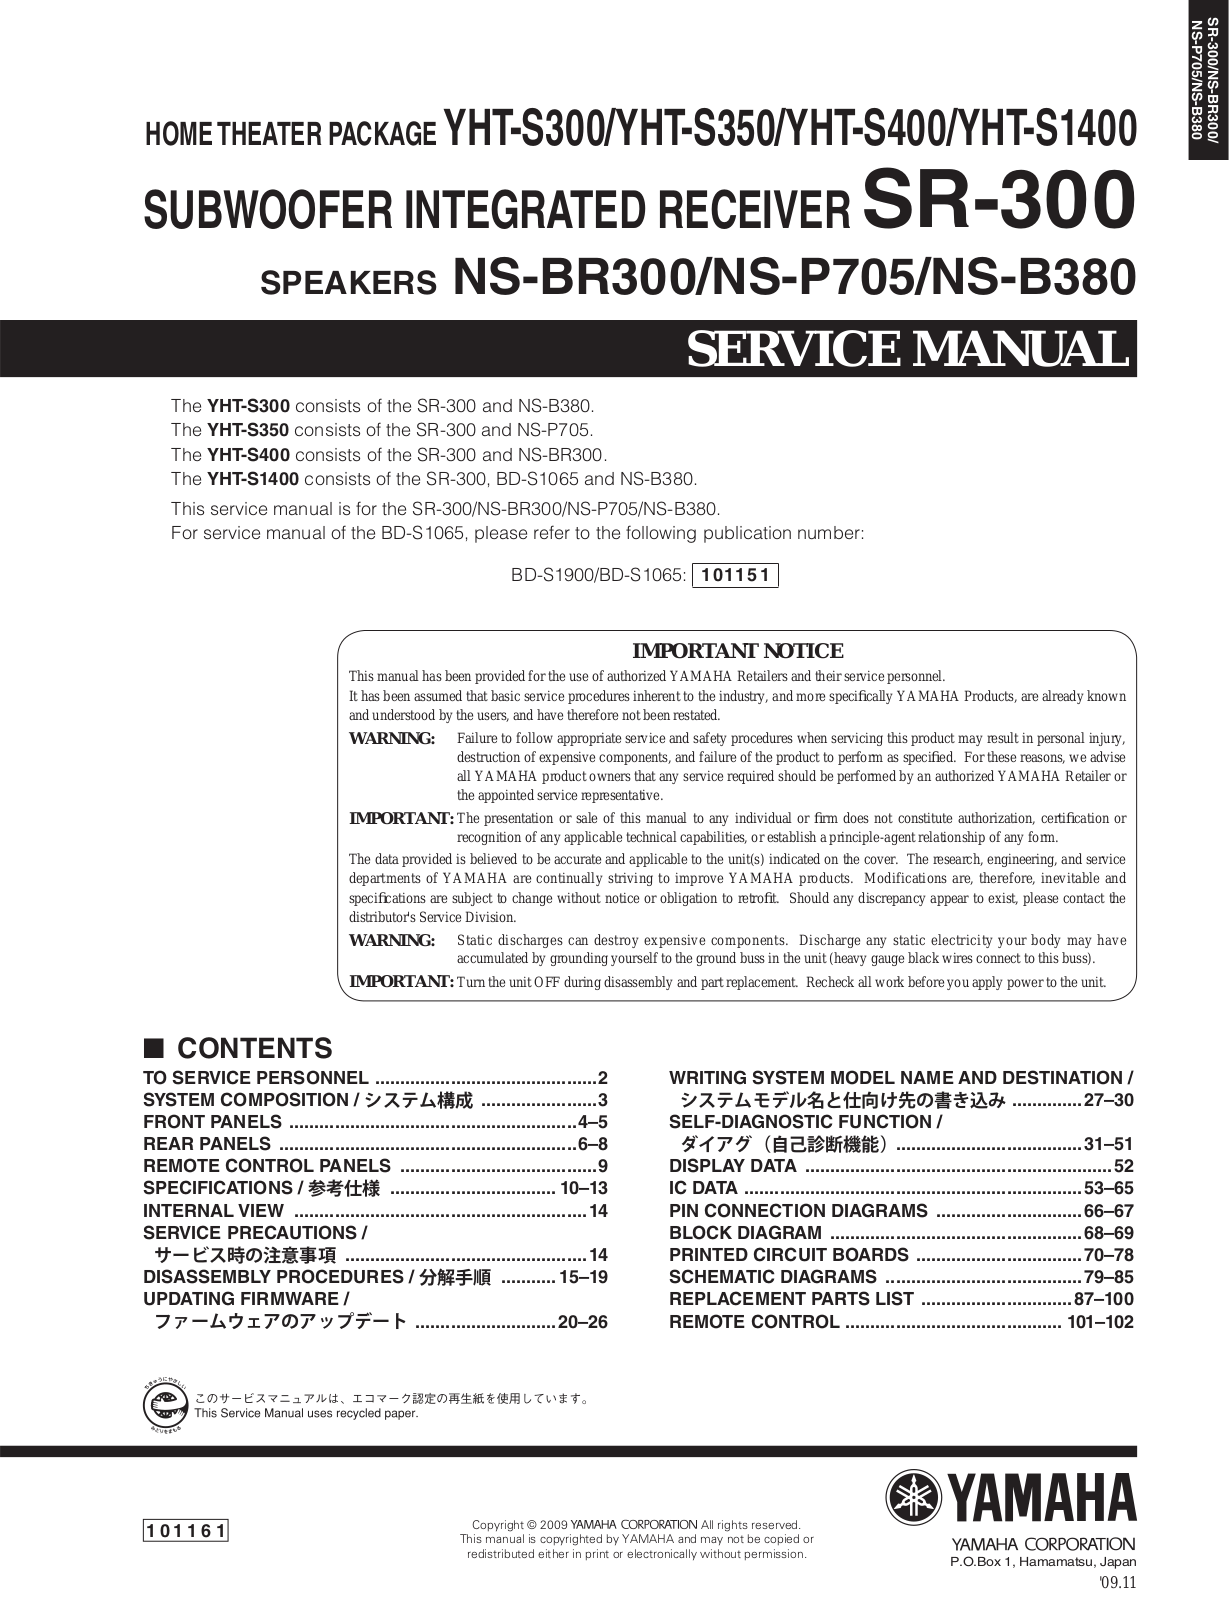 Yamaha SR-300 Service Manual